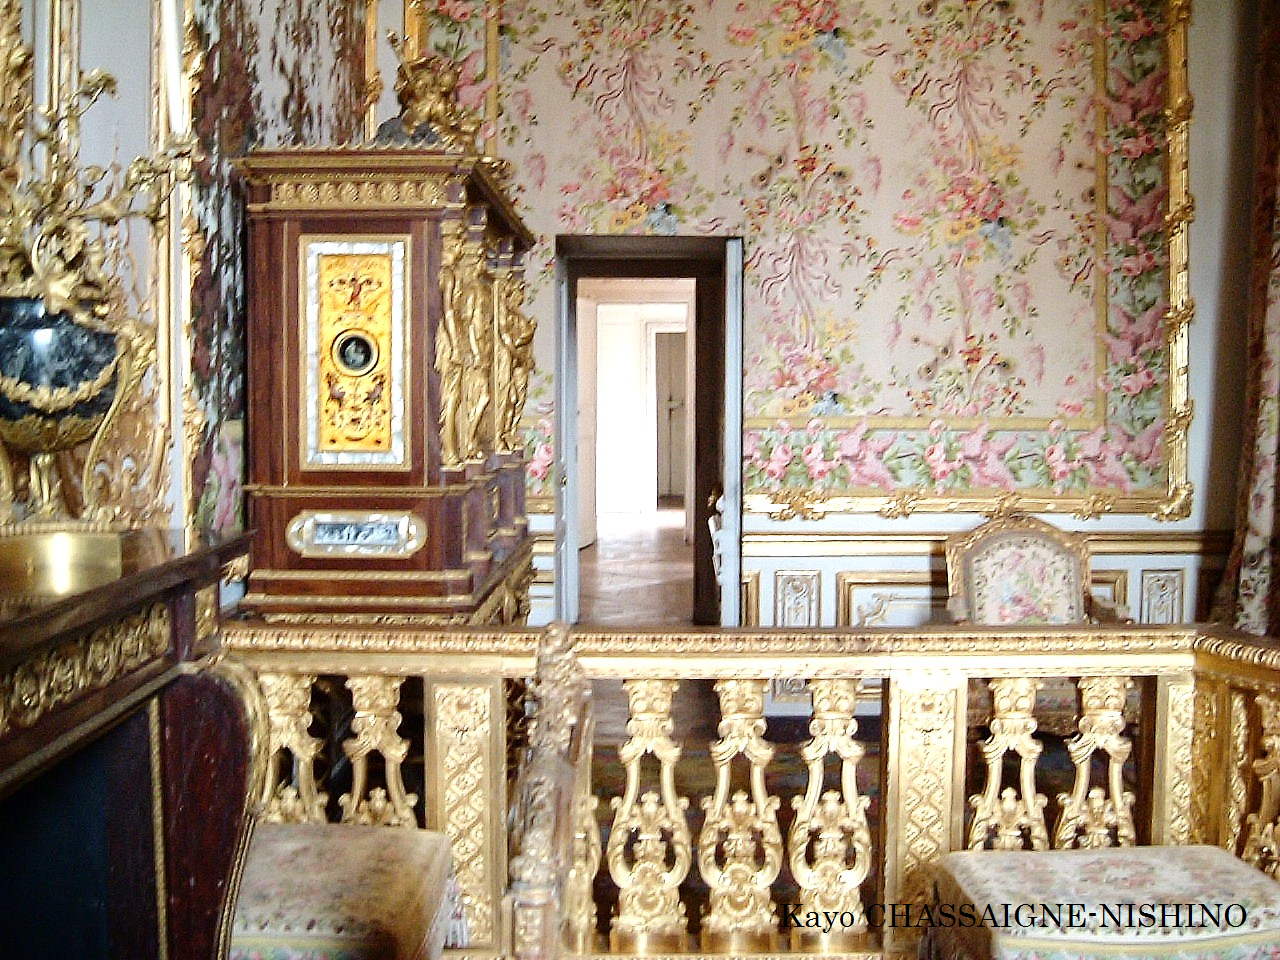 フランス紀行 マリー アントワネットの足跡を探して ヴェルサイユ宮殿の隠れた部屋